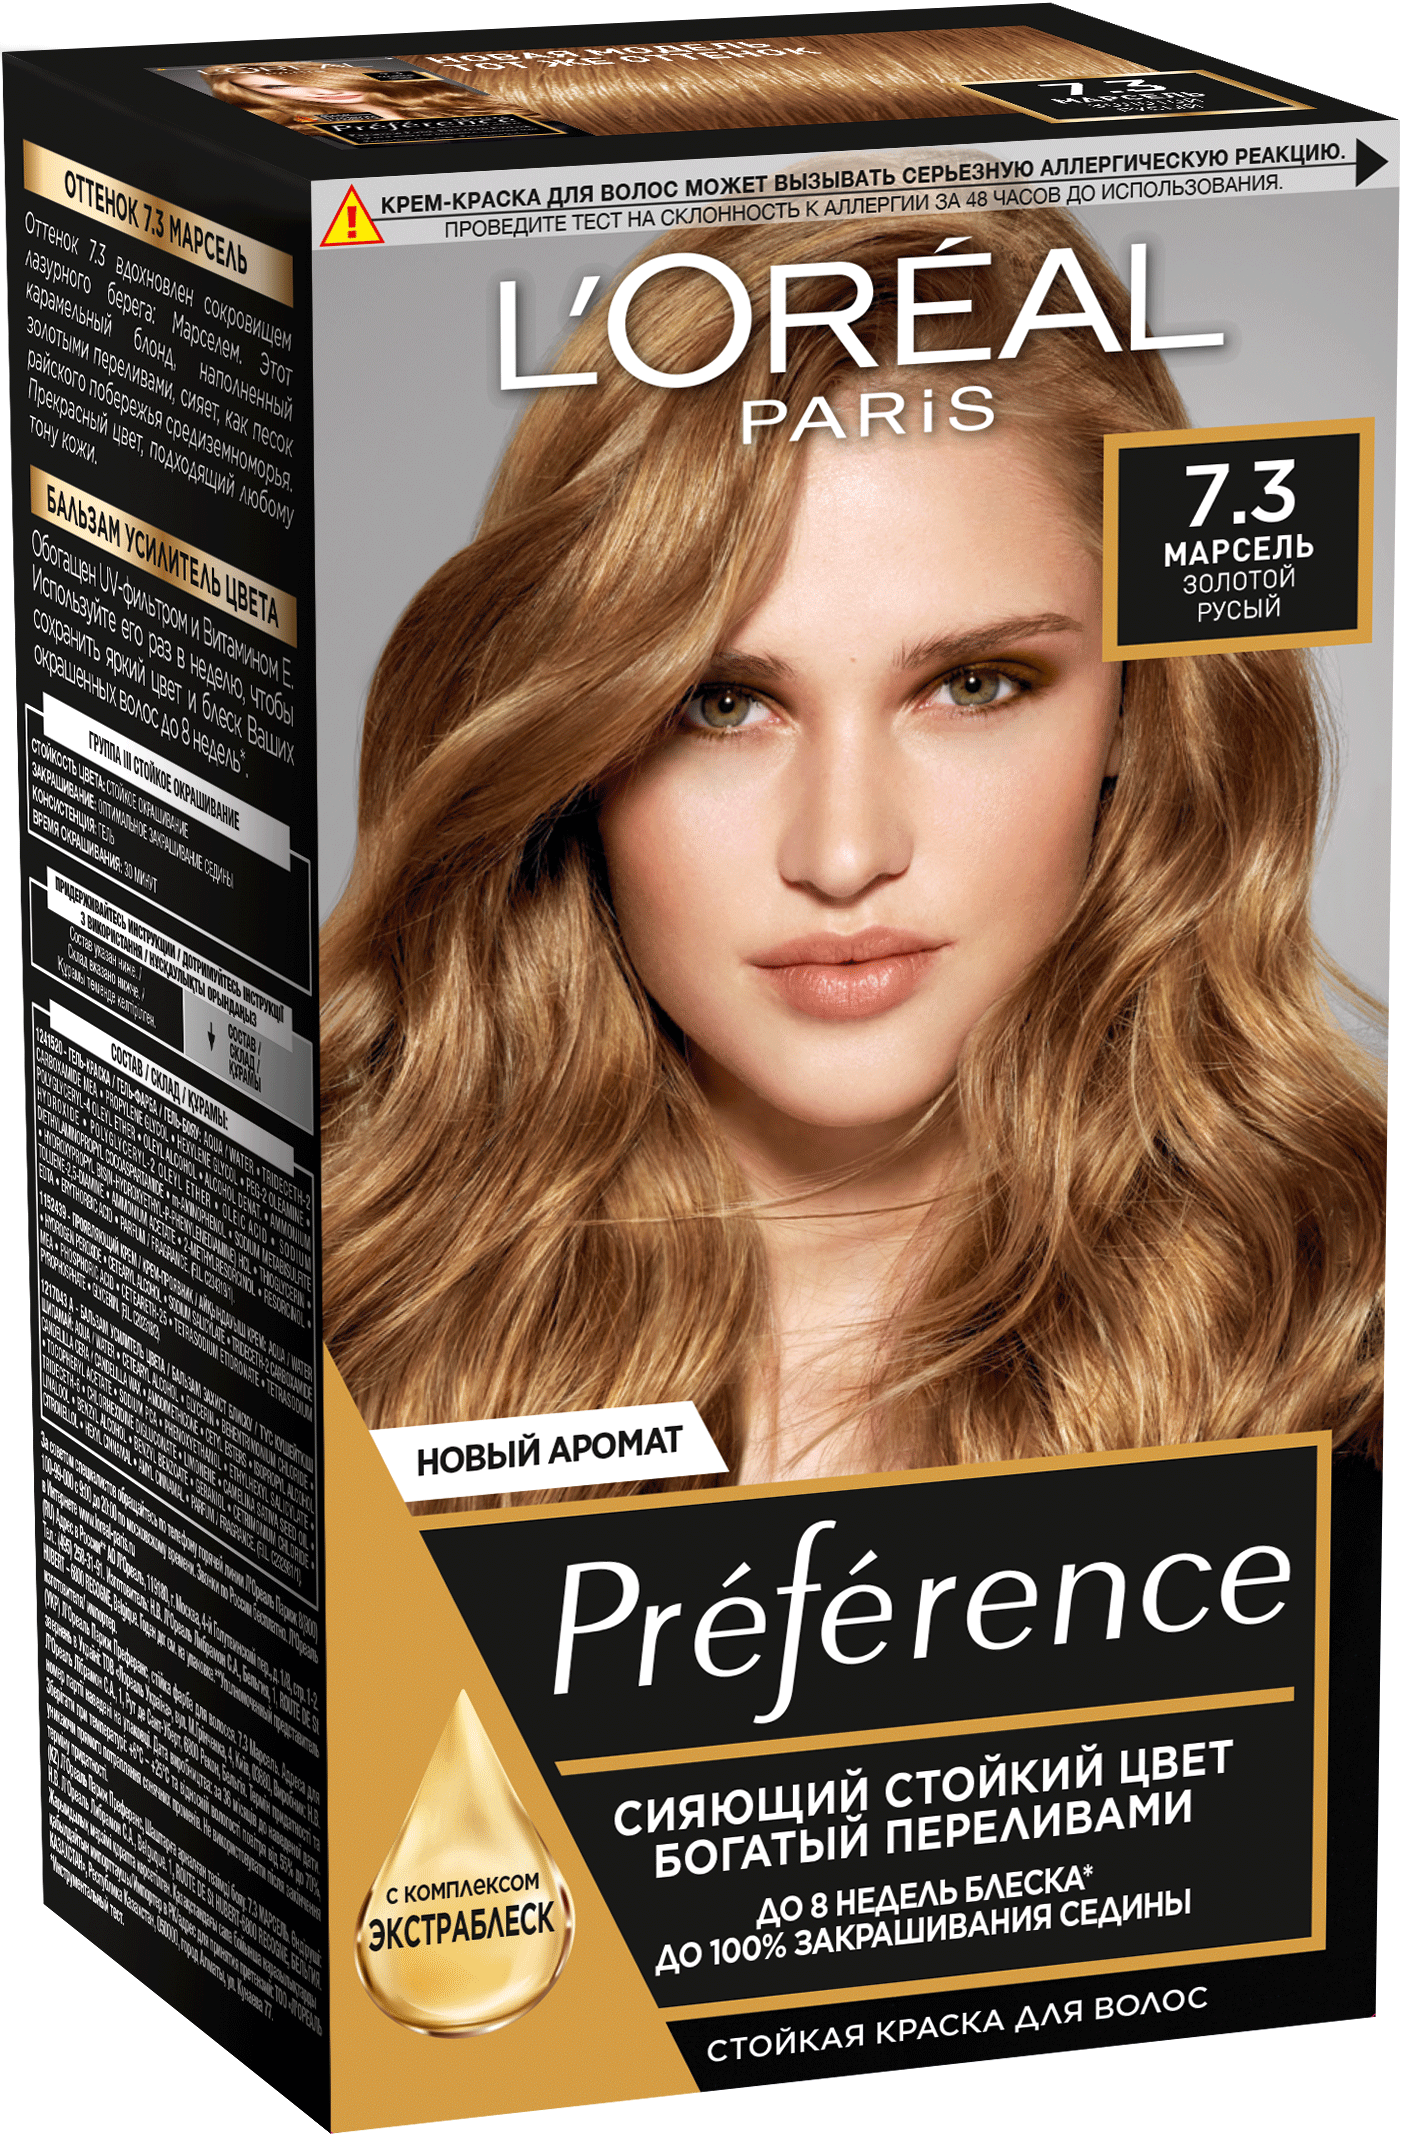 фото Краска для волос l'oreal "preference" тон 7.3, марсель, золотой русый 174 мл l'oreal paris